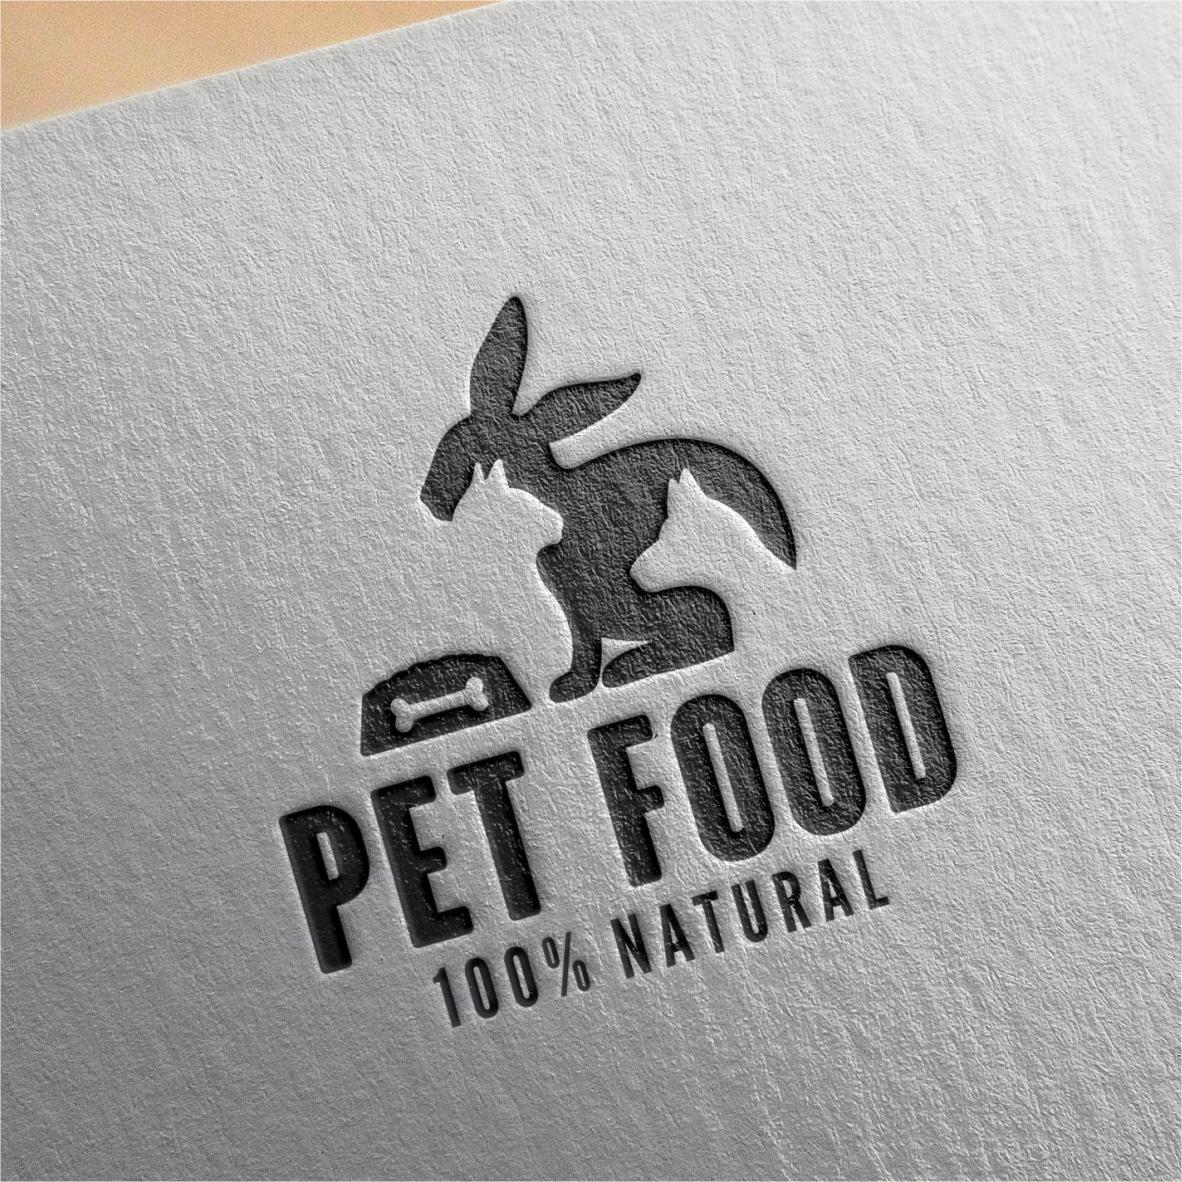 9 pet shop logo design collection 6 443